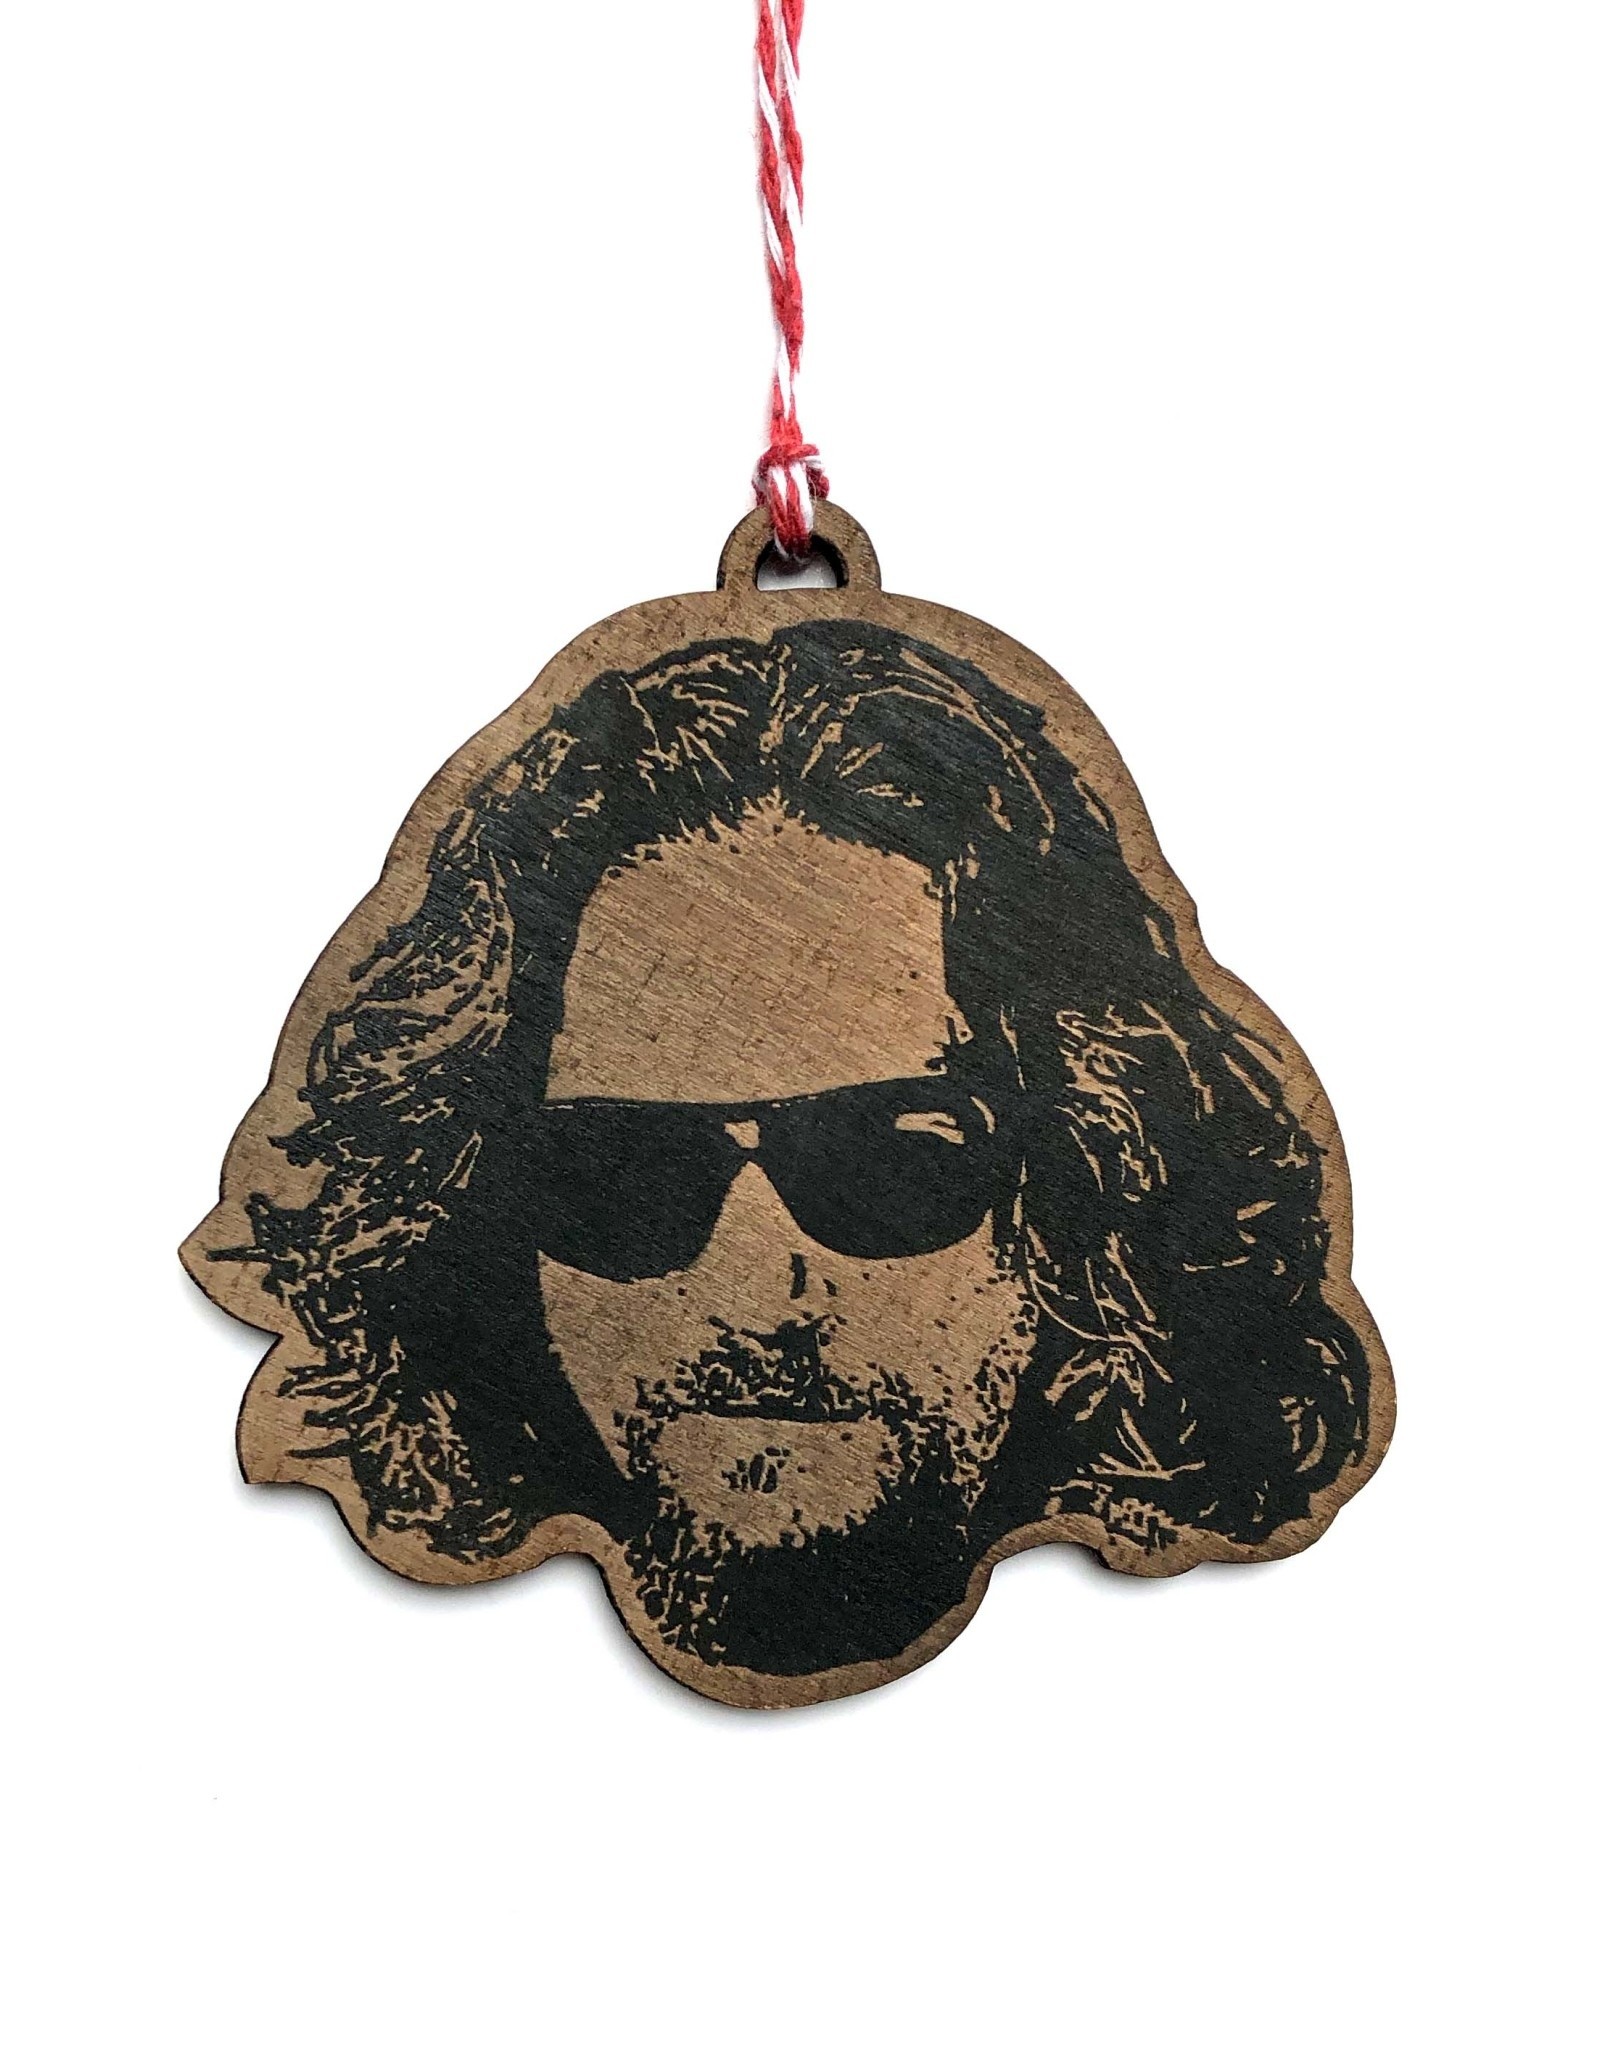 The Dude (Jeff Bridges) Wooden Ornament